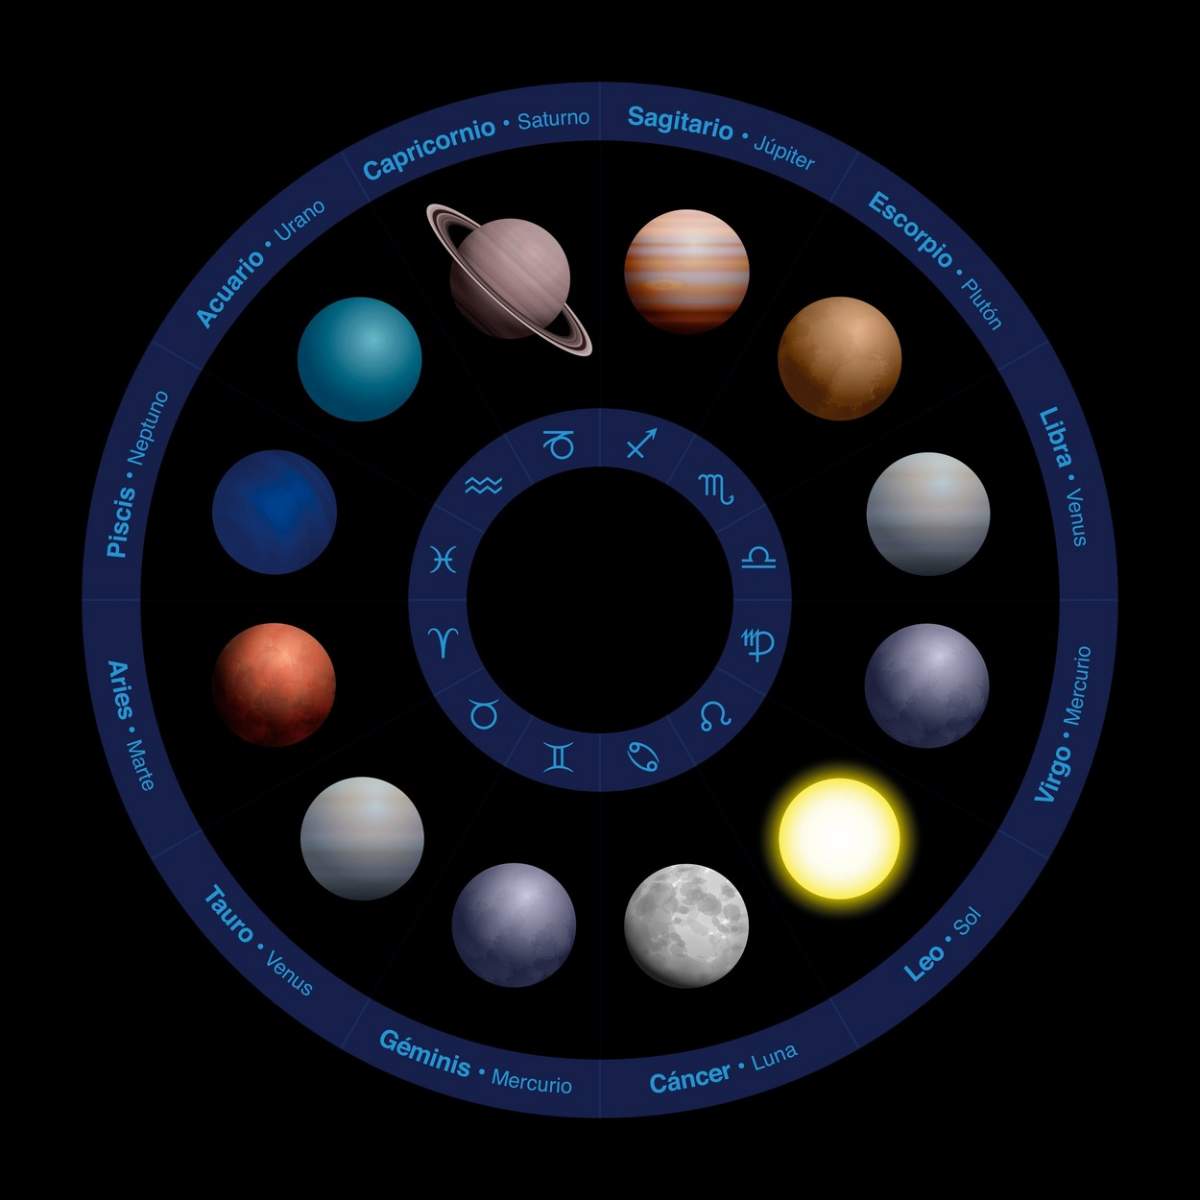 Planetele astrologiei - Etichetare în spaniolă, design realist, în cerc zodiacal - cu nume în cercul exterior și simboluri în cercul interior.